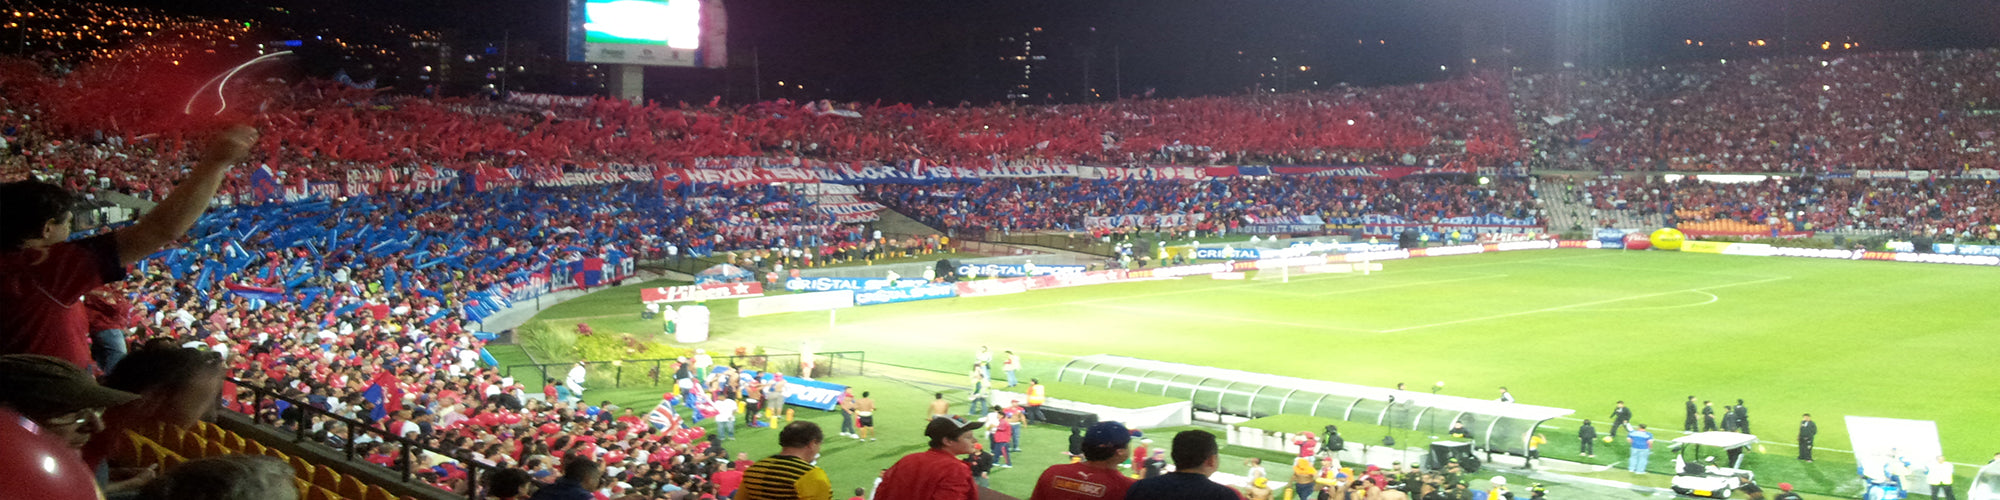 Independiente Medellin Tickets & Experiences